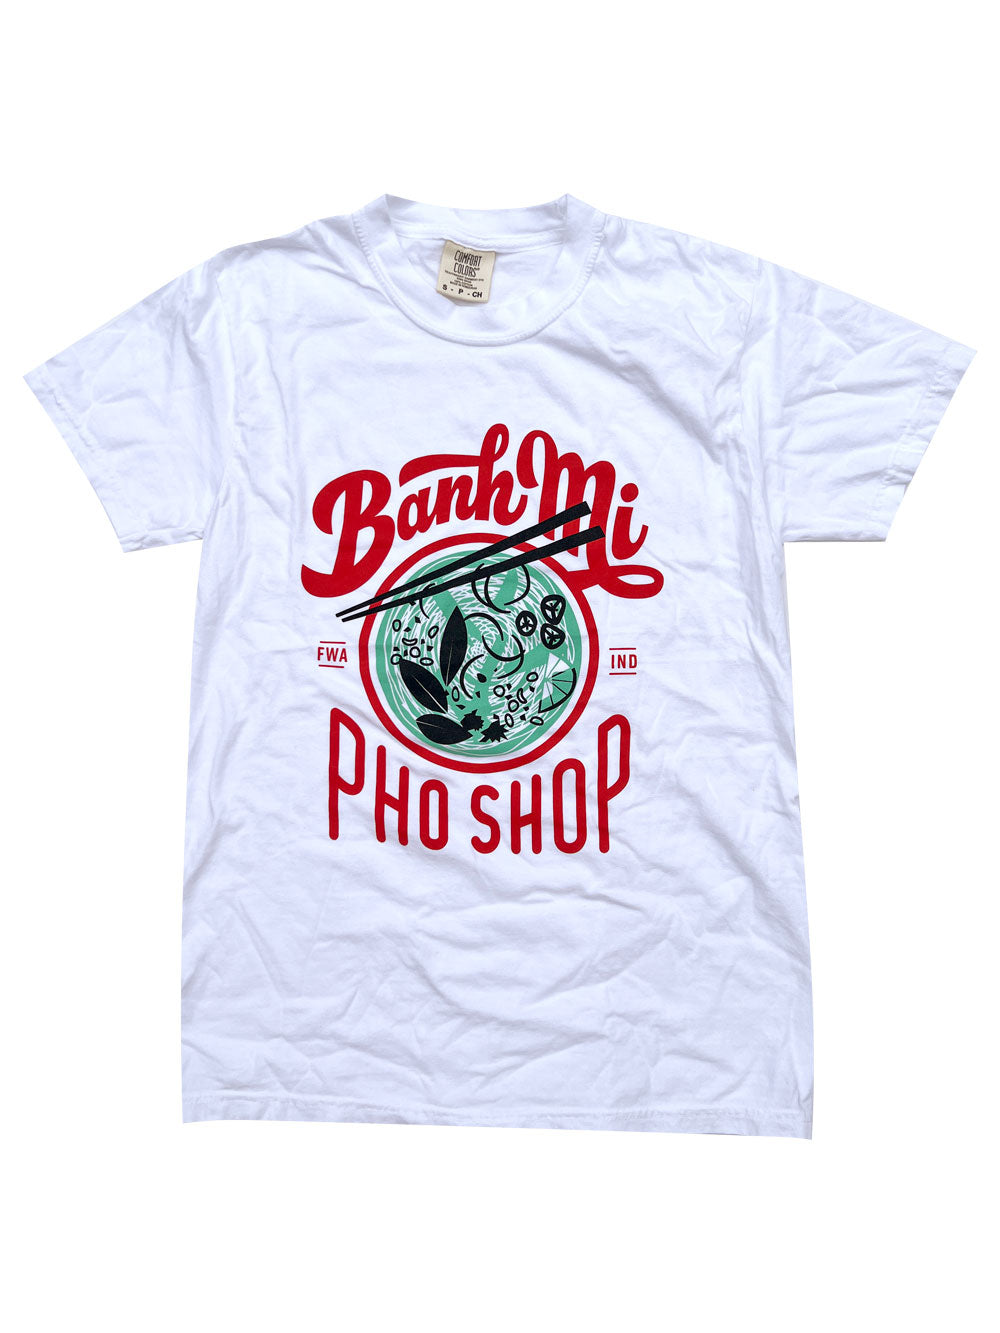 Banh Mi Pho Shop white t-shirt